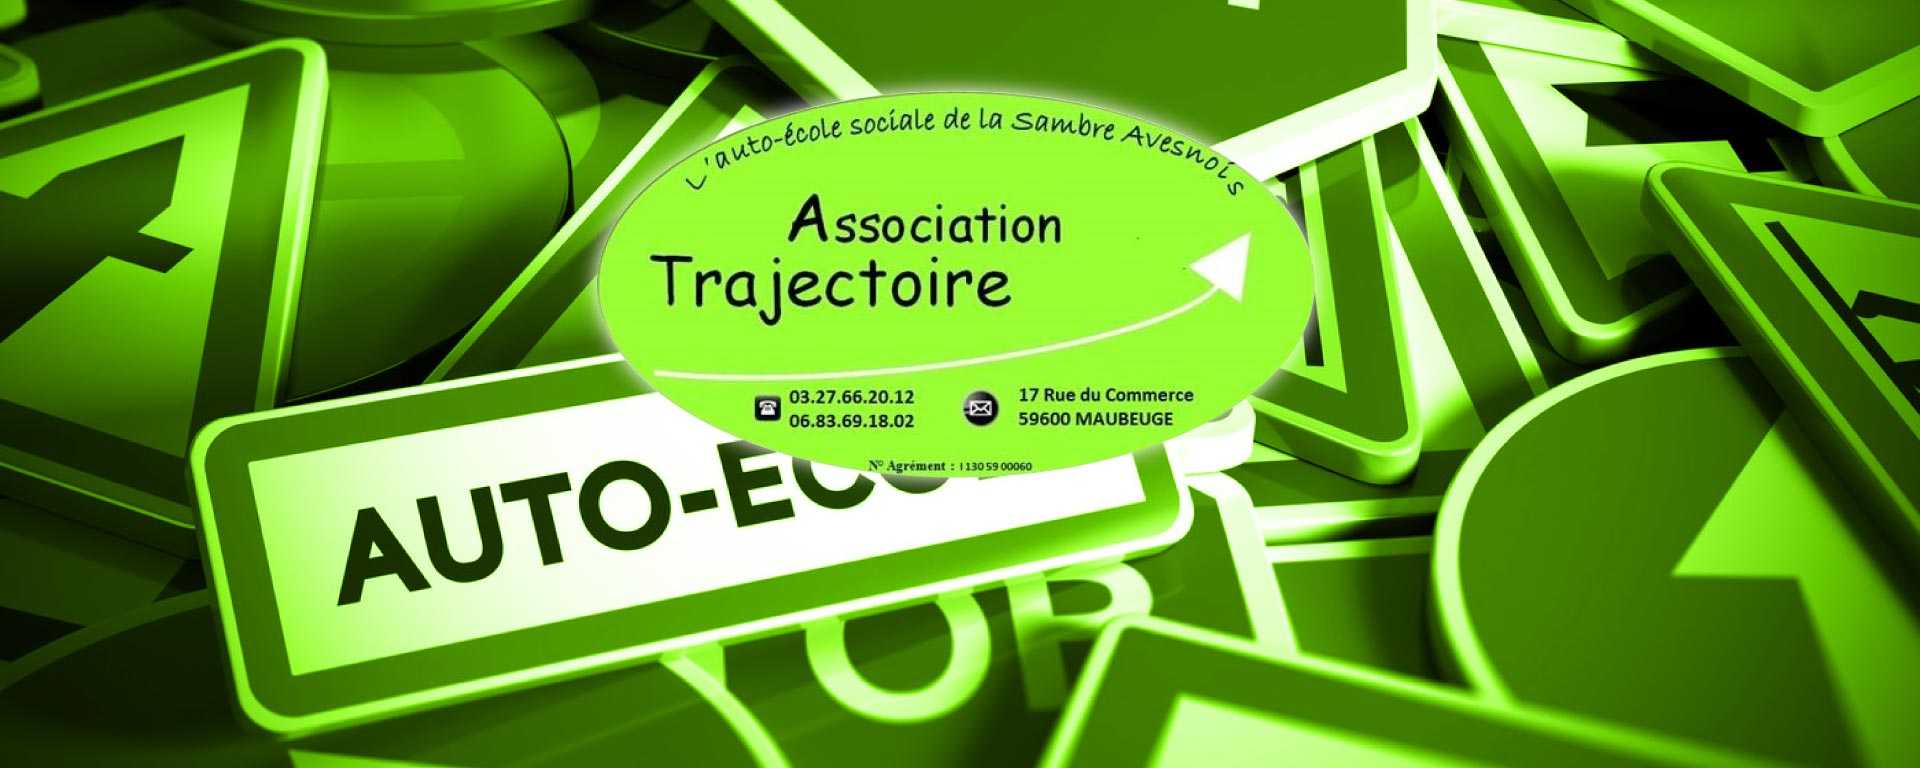 Association Trajectoire